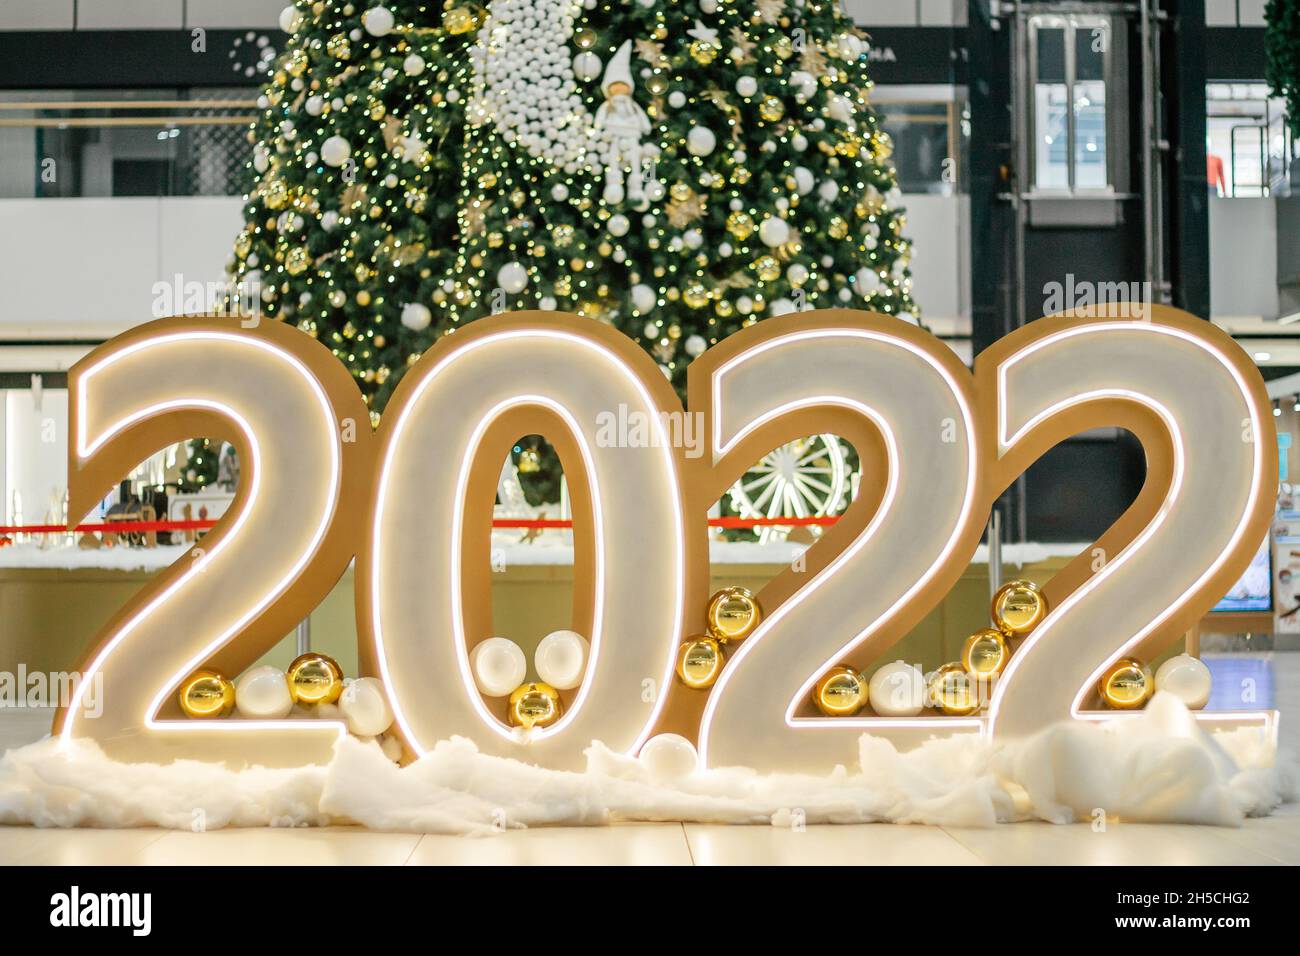 Große, leuchtende Zahlen 2022 in der Halle auf dem Boden vor dem Hintergrund eines geschmückten Weihnachtsbaums. Frohe Weihnachten und ein glückliches neues Jahr 2022 Stockfoto